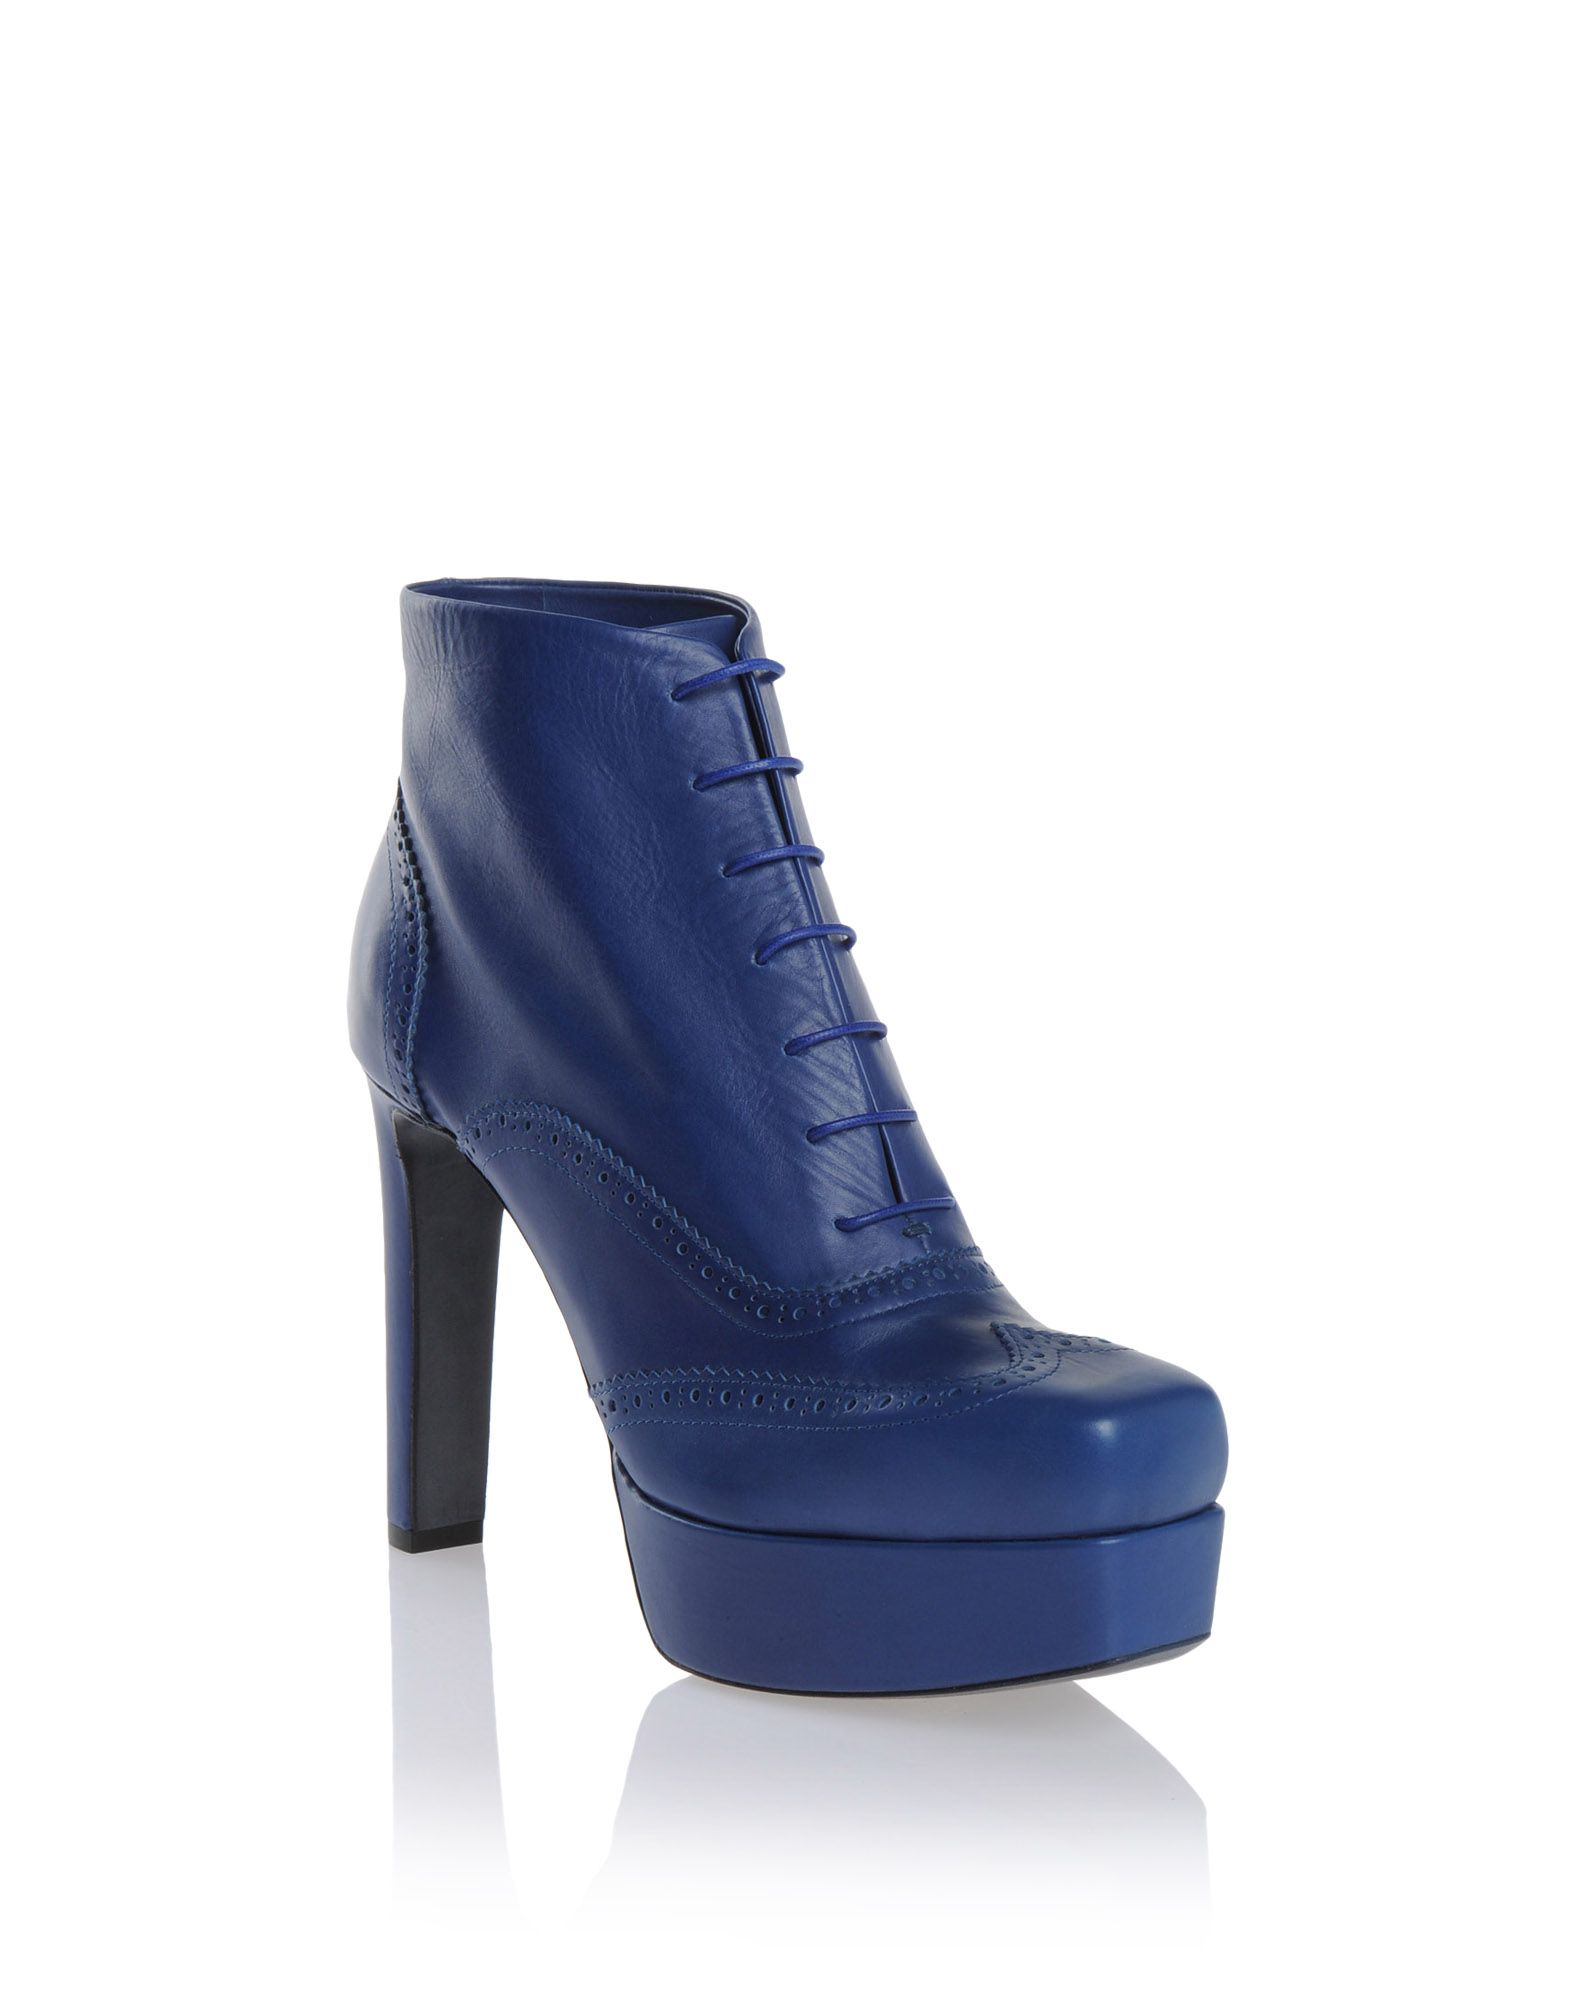 Ankle boots Women - Shoes Women on Jil Sander Online Store